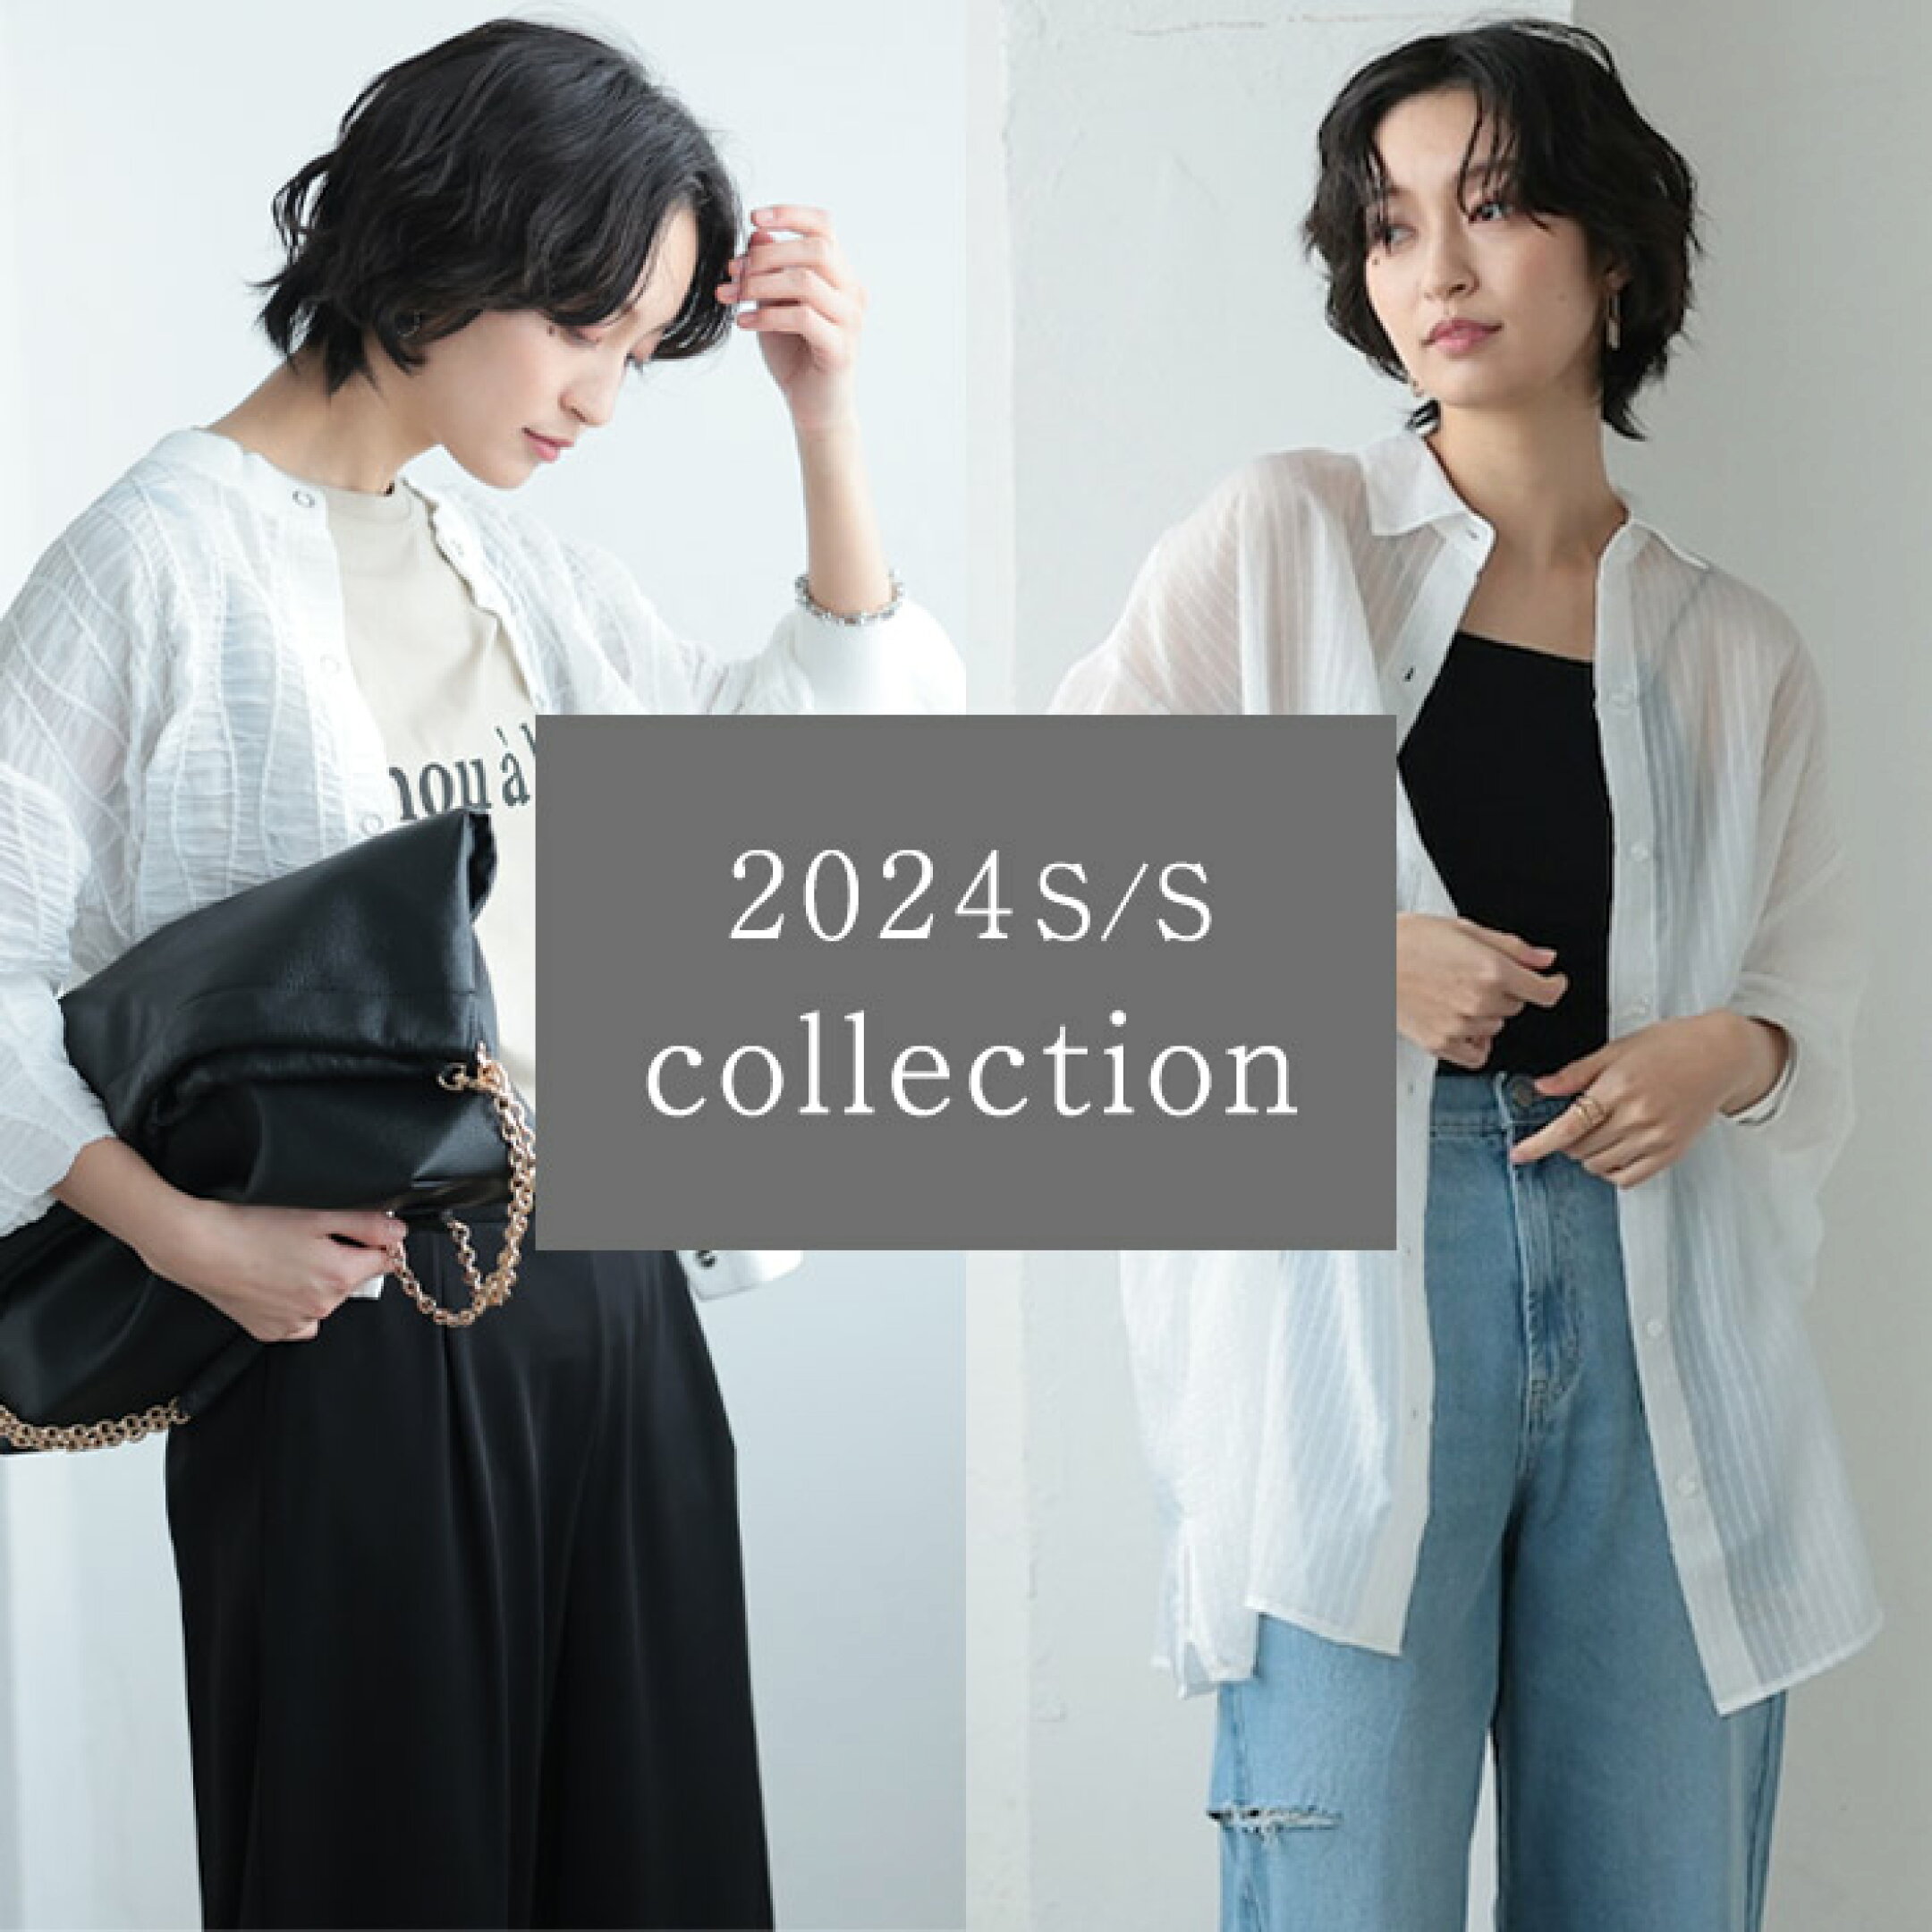 2024春夏 collection